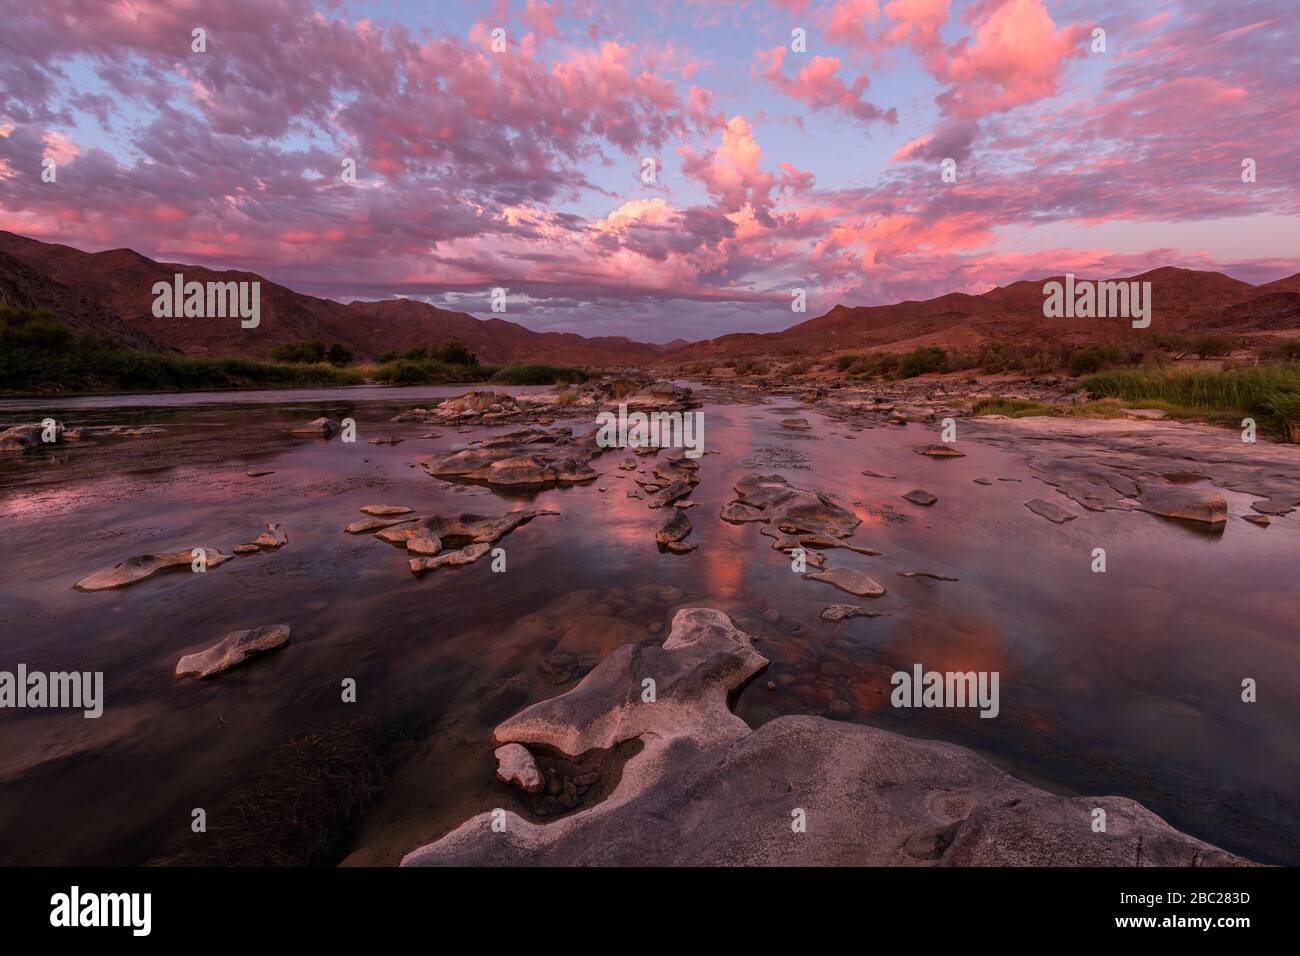 Un hermoso paisaje tomado después de la puesta de sol con montañas y el río Orange, con espectaculares nubes rosadas que se reflejan en la superficie del agua, tomado en th Foto de stock